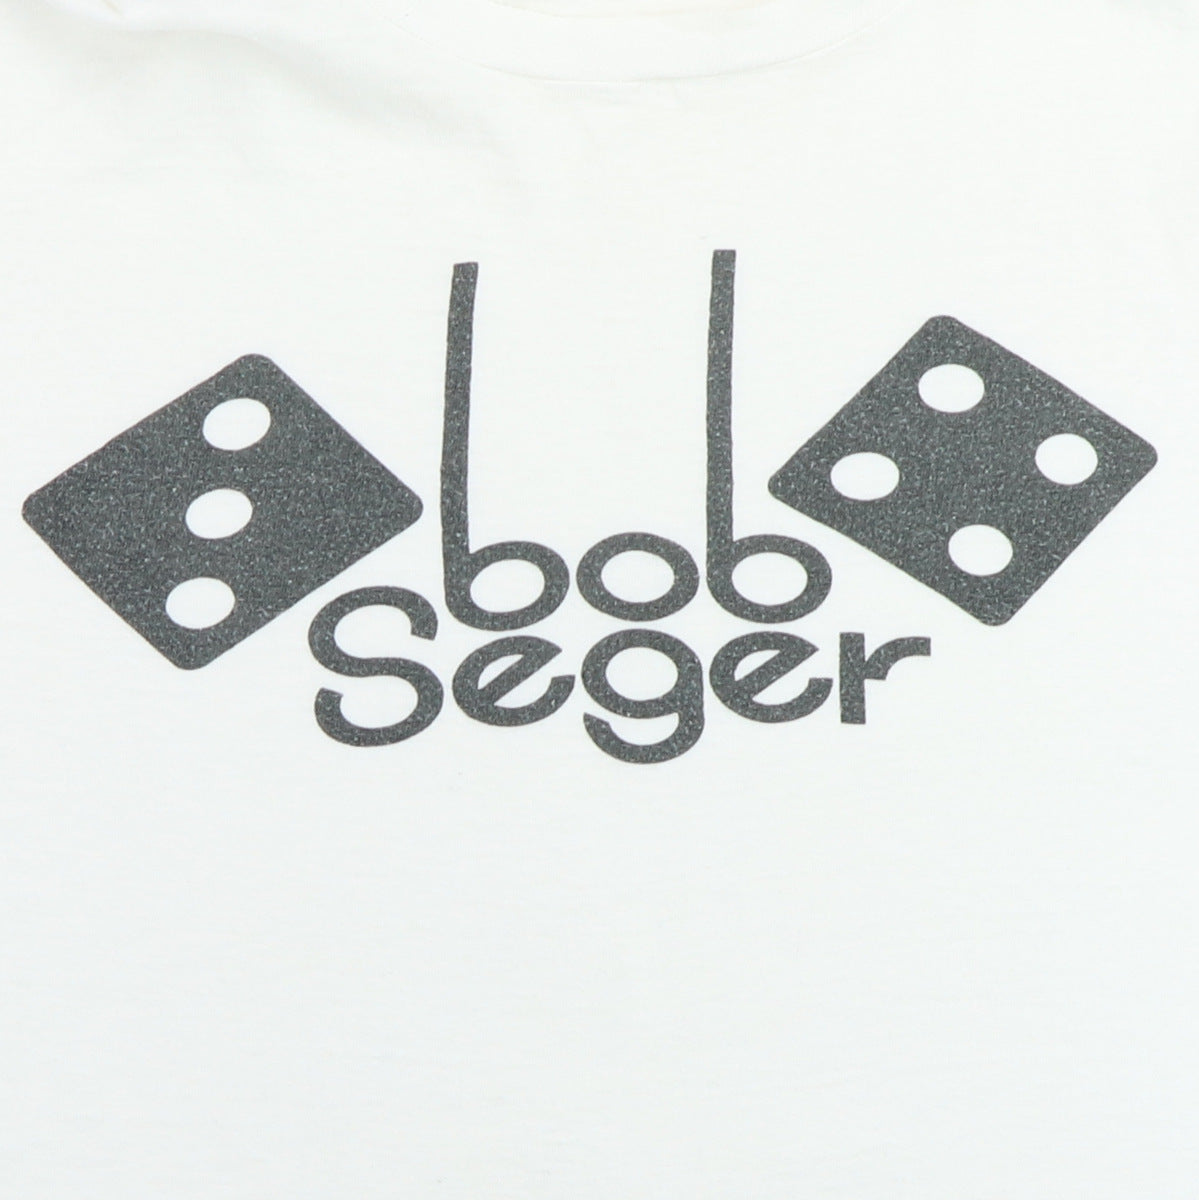 1974 Bob Seger Seven Shirt